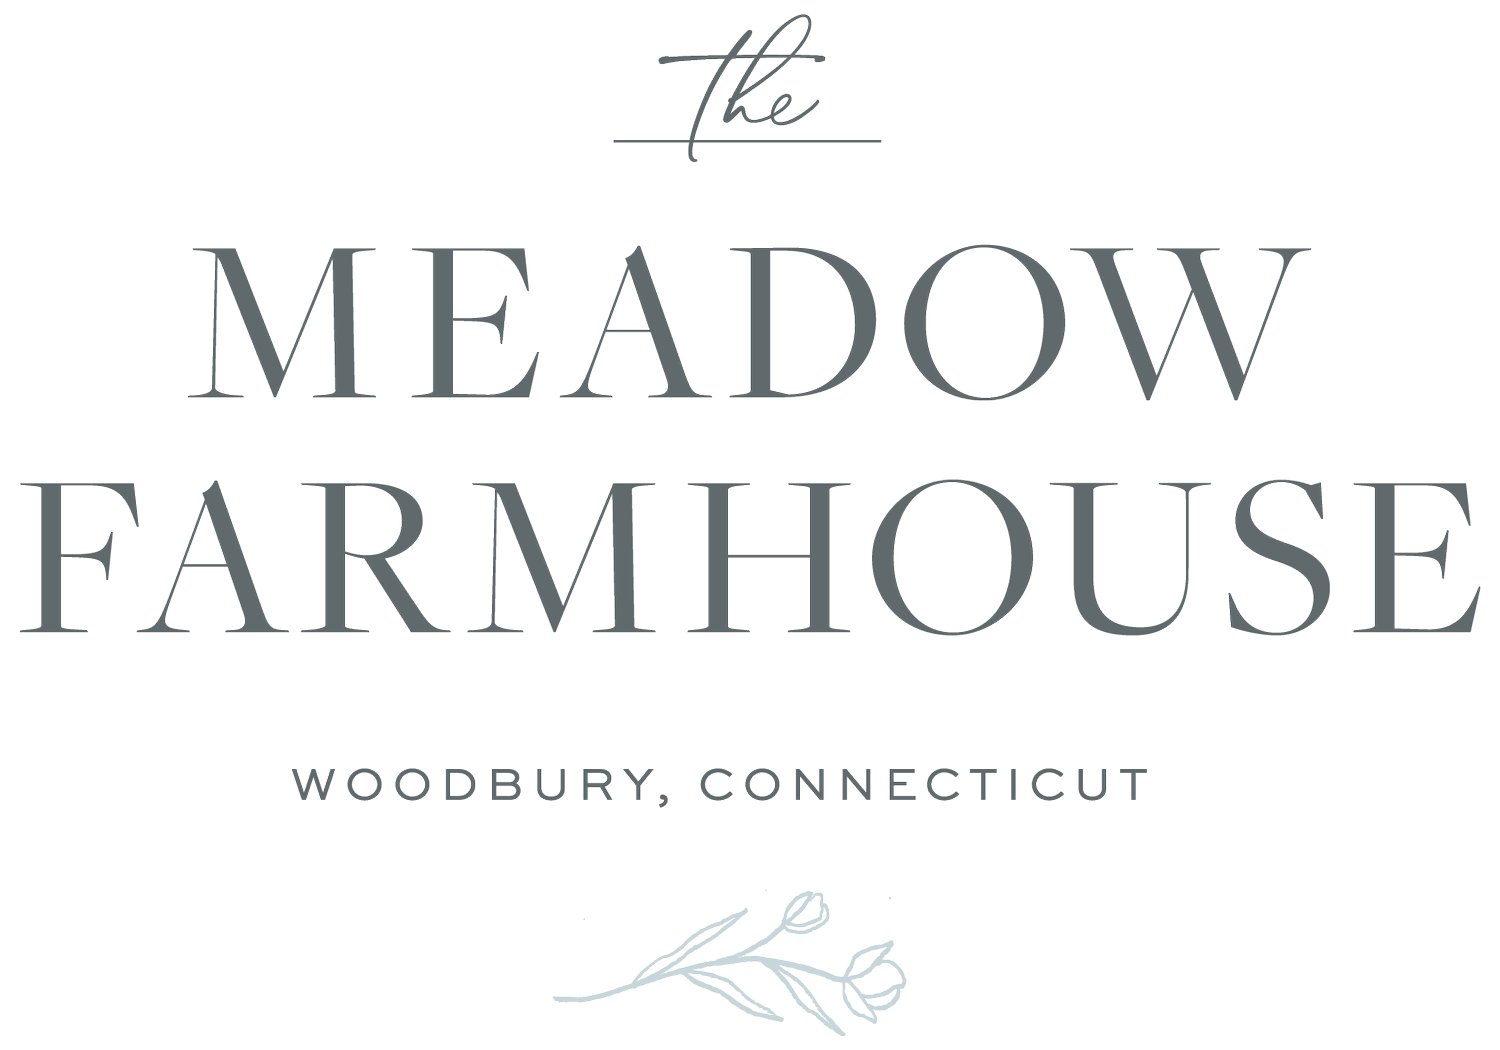 The Meadow Farmhouse